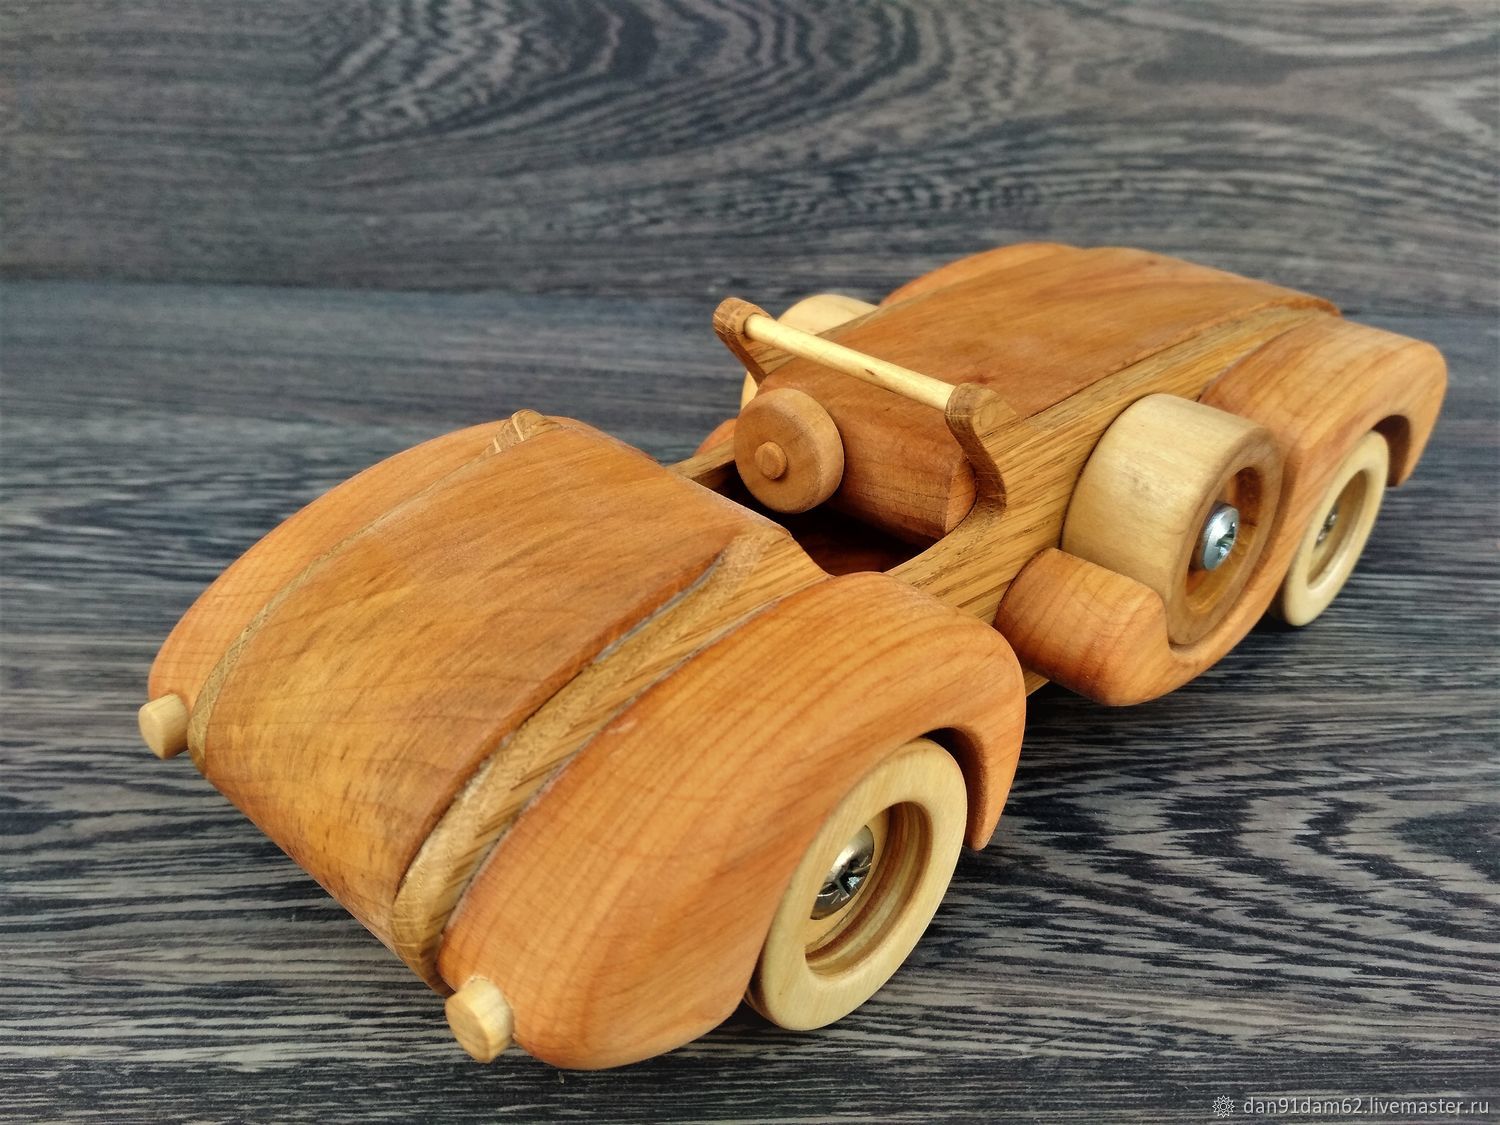 Wooden master. Машинка из дерева. Деревянные игрушки. Деревянные машинки для детей. Игрушка машинка из дерева.